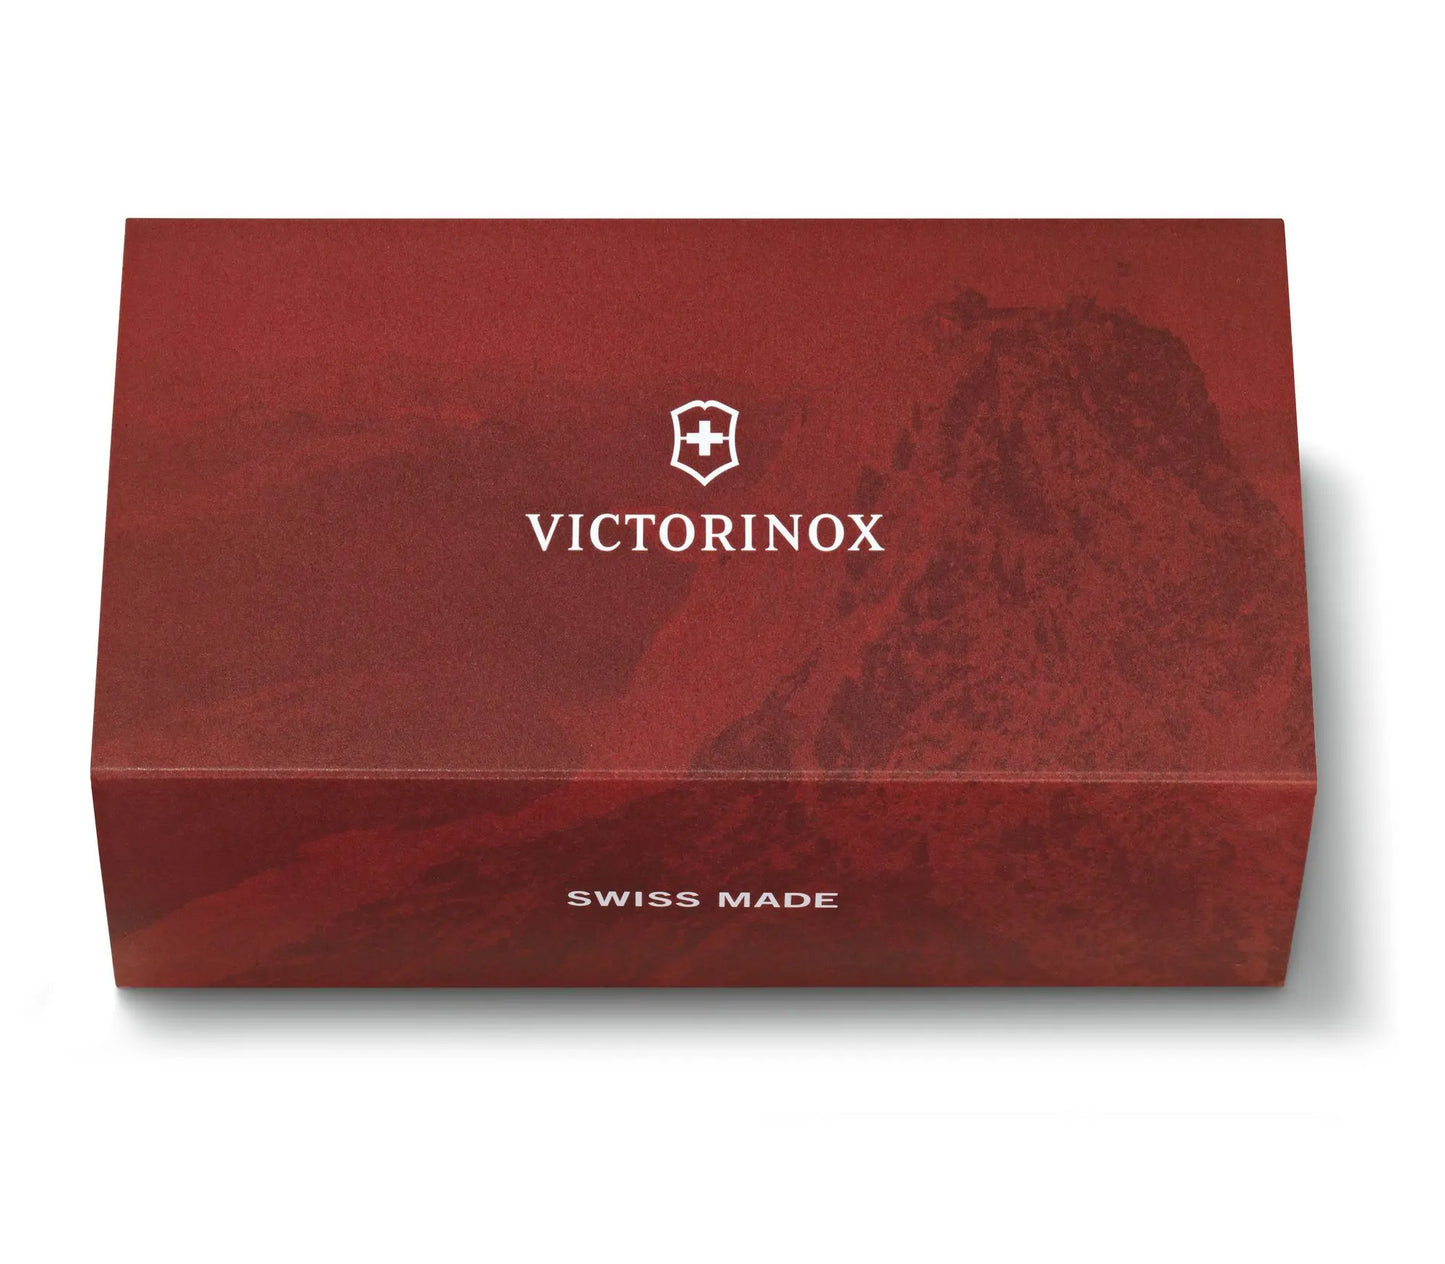 Victorinox multiuso Replica 1897 Limited Edition 125 anni 2022